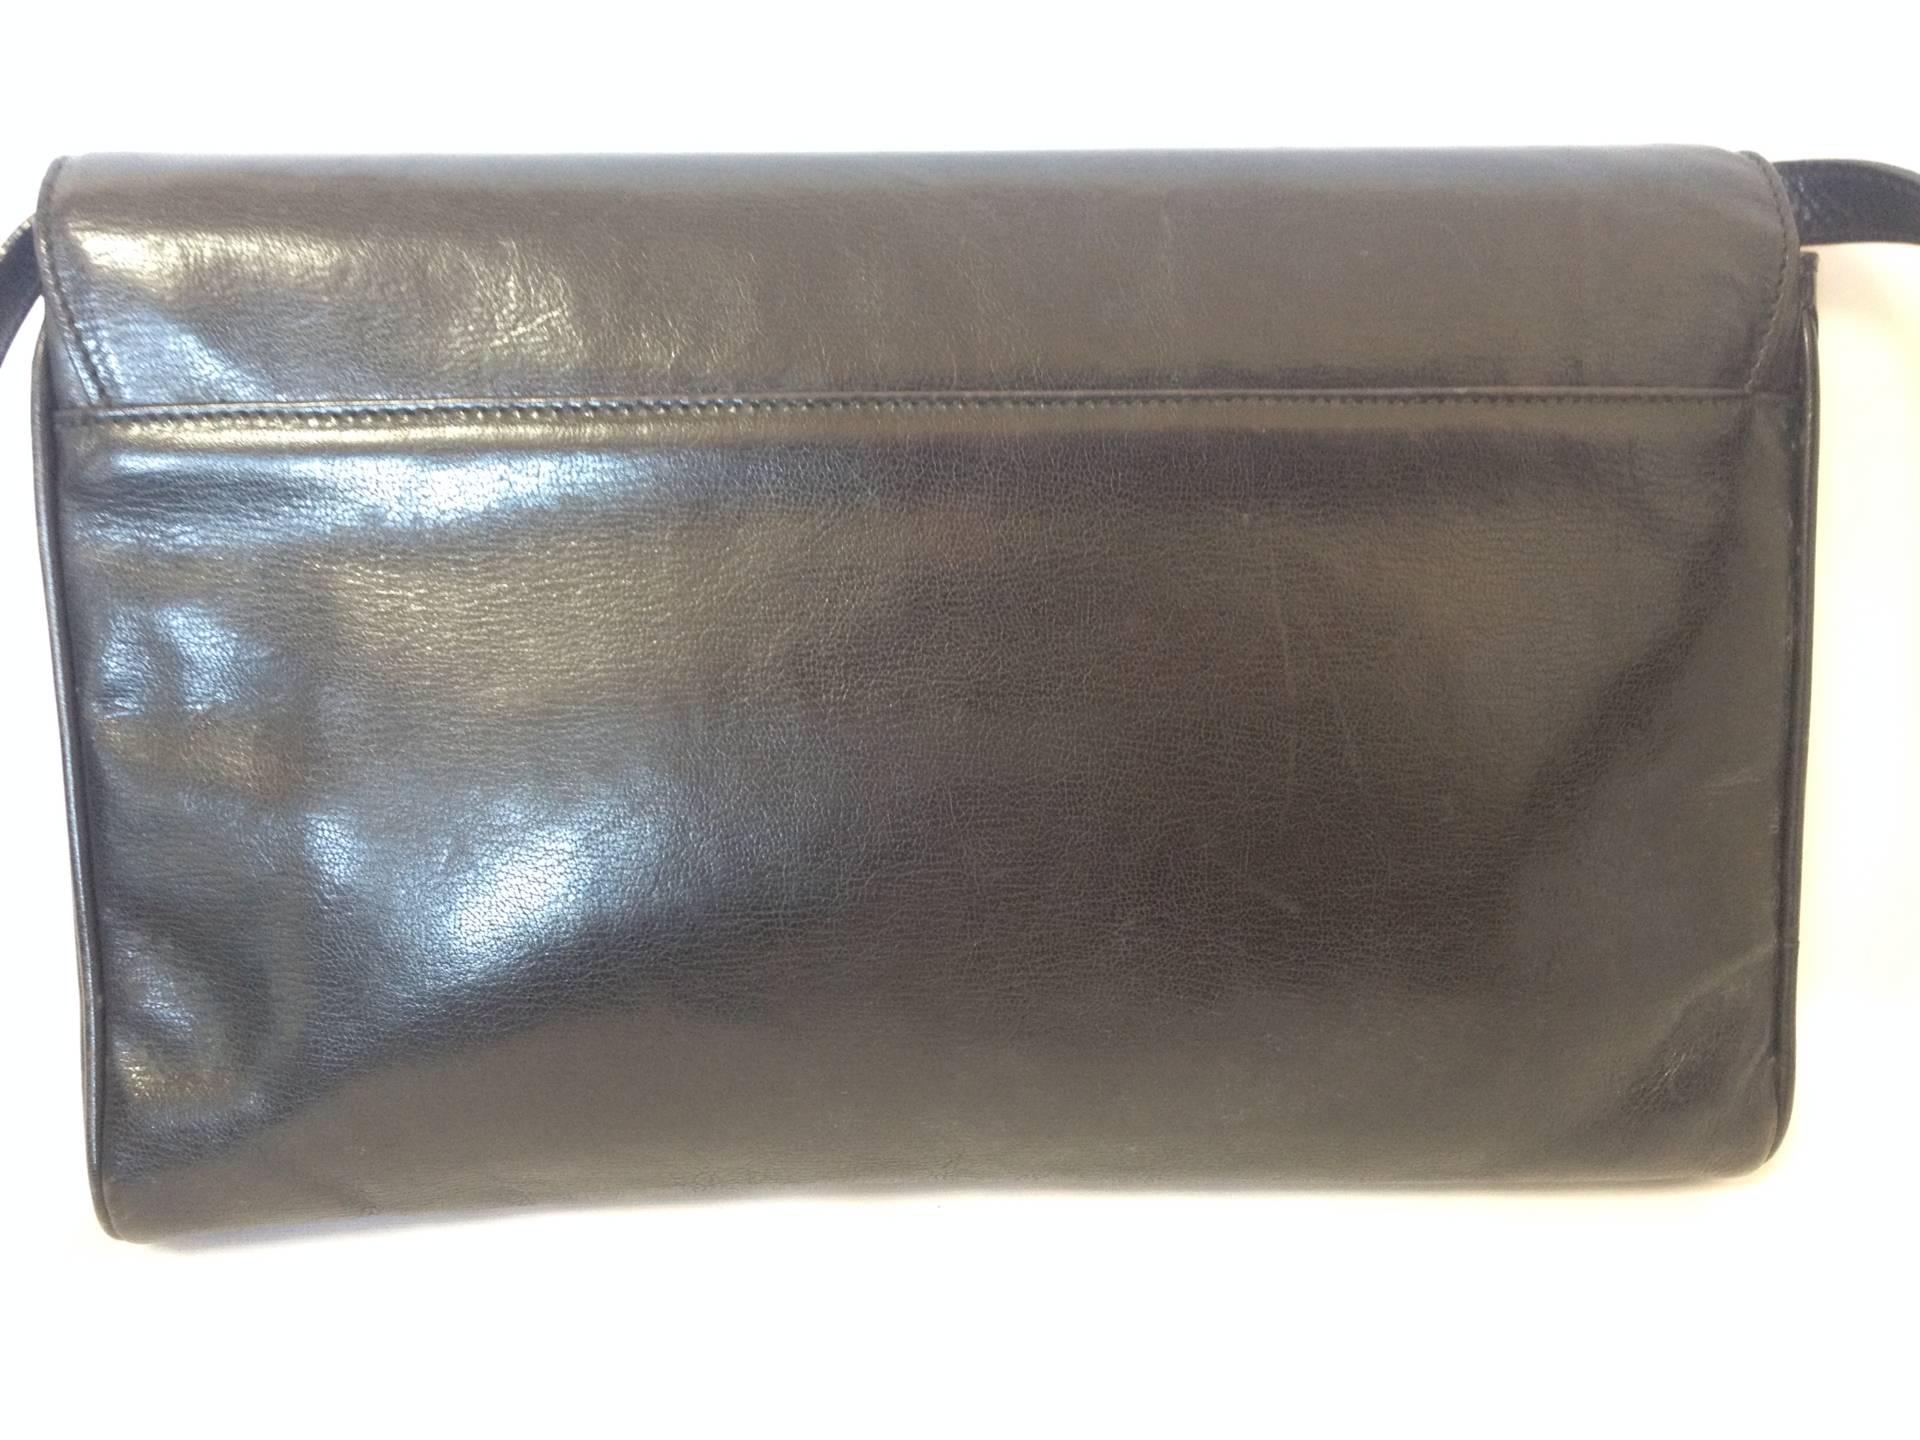 Gray Vintage FENDI black leather shoulder bag, large clutch purse with embossed art, 